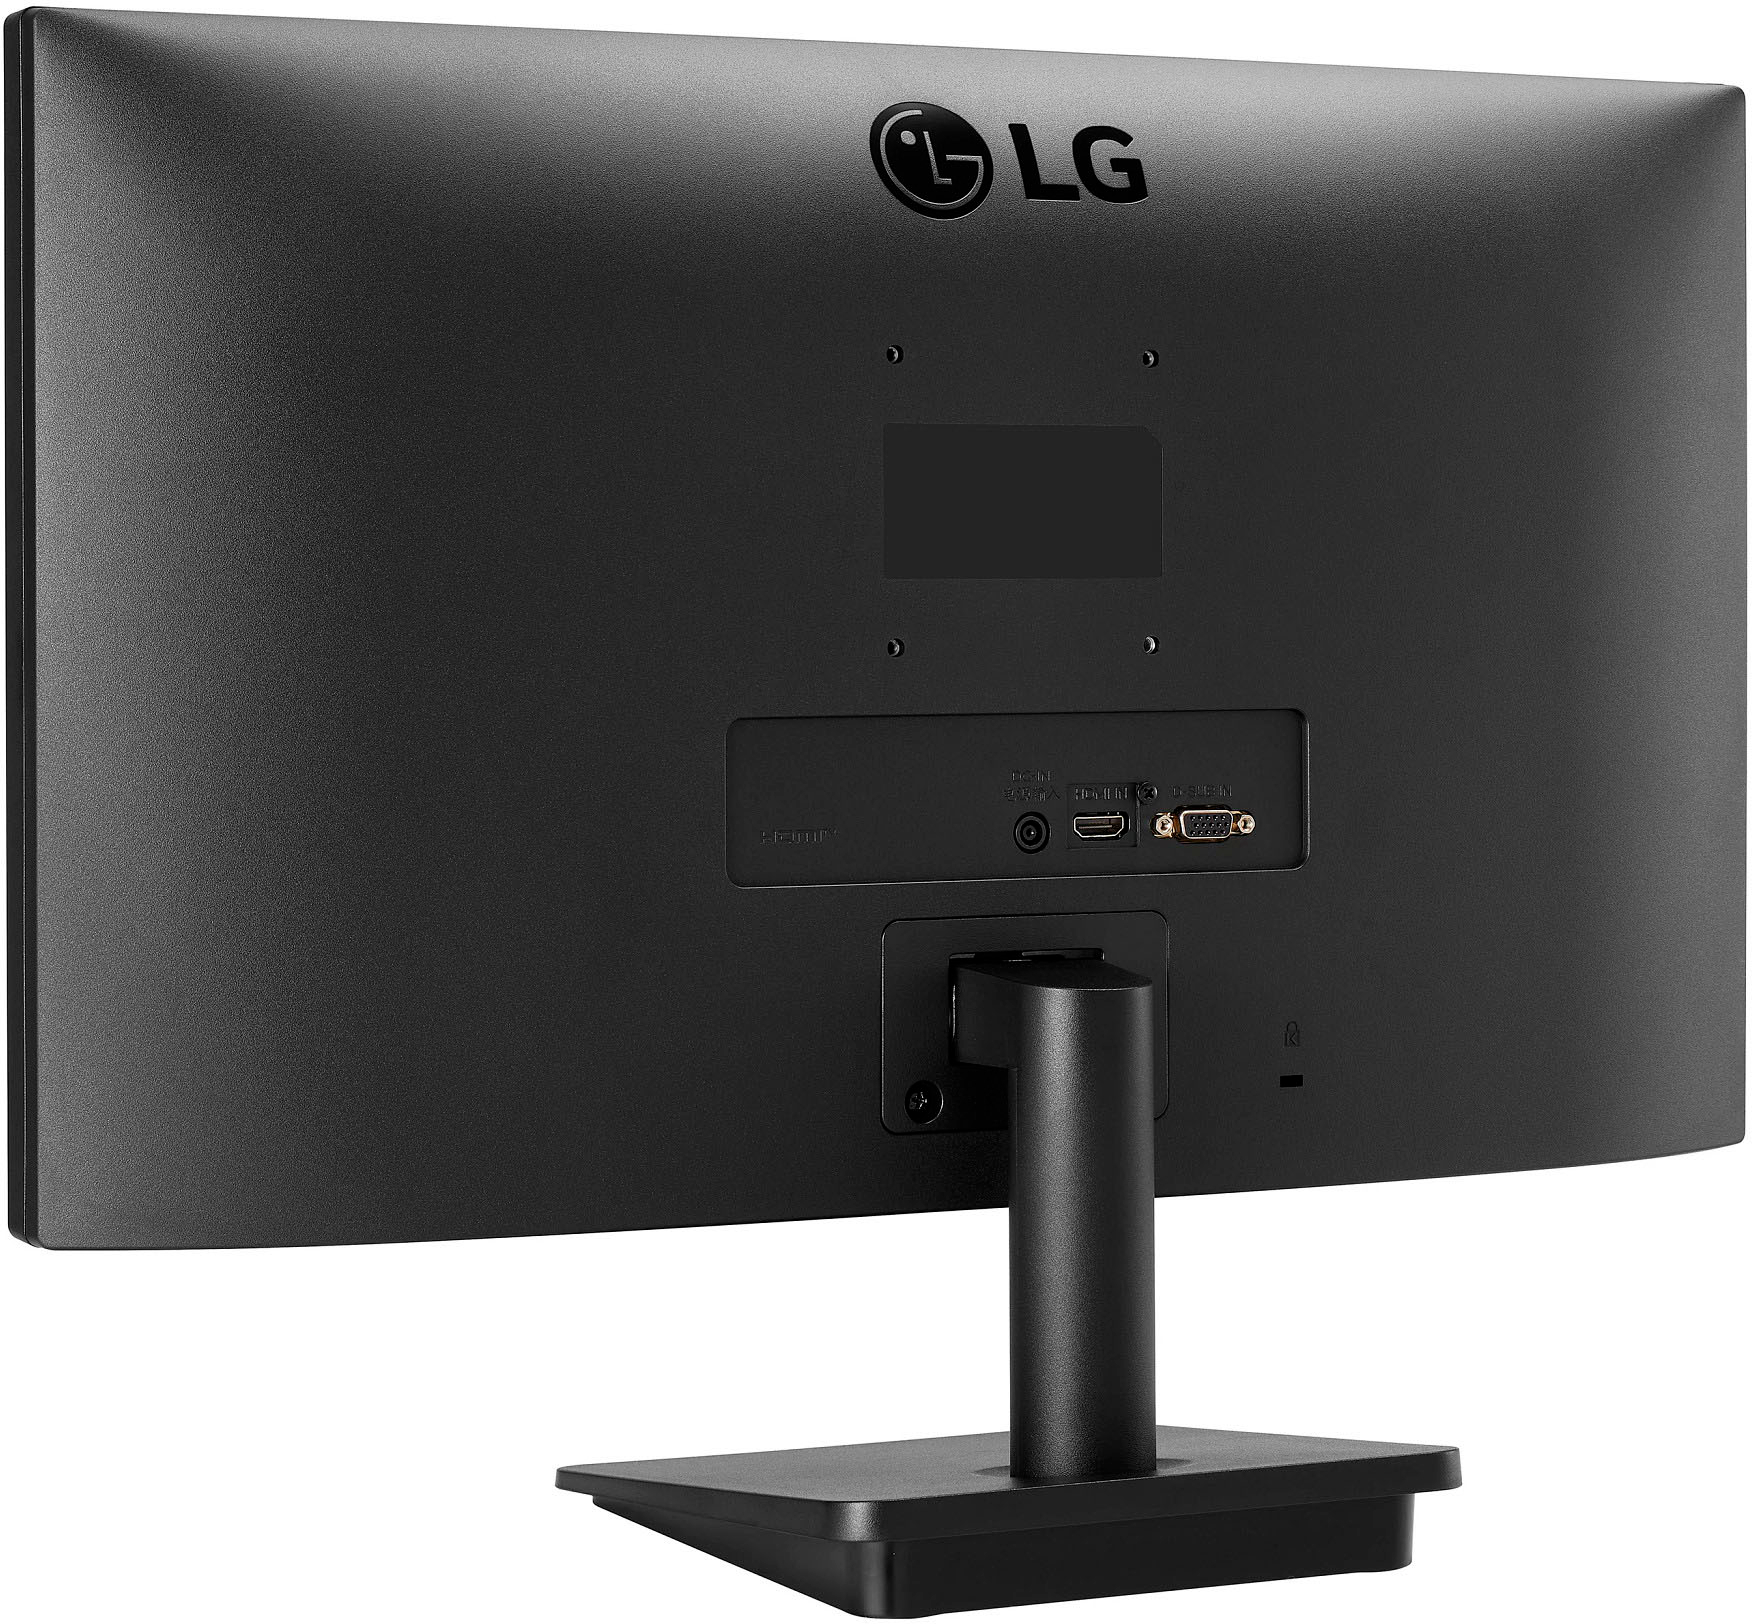 Back View: LG - 22” LED FHD FreeSync Monitor (HDMI) - Black